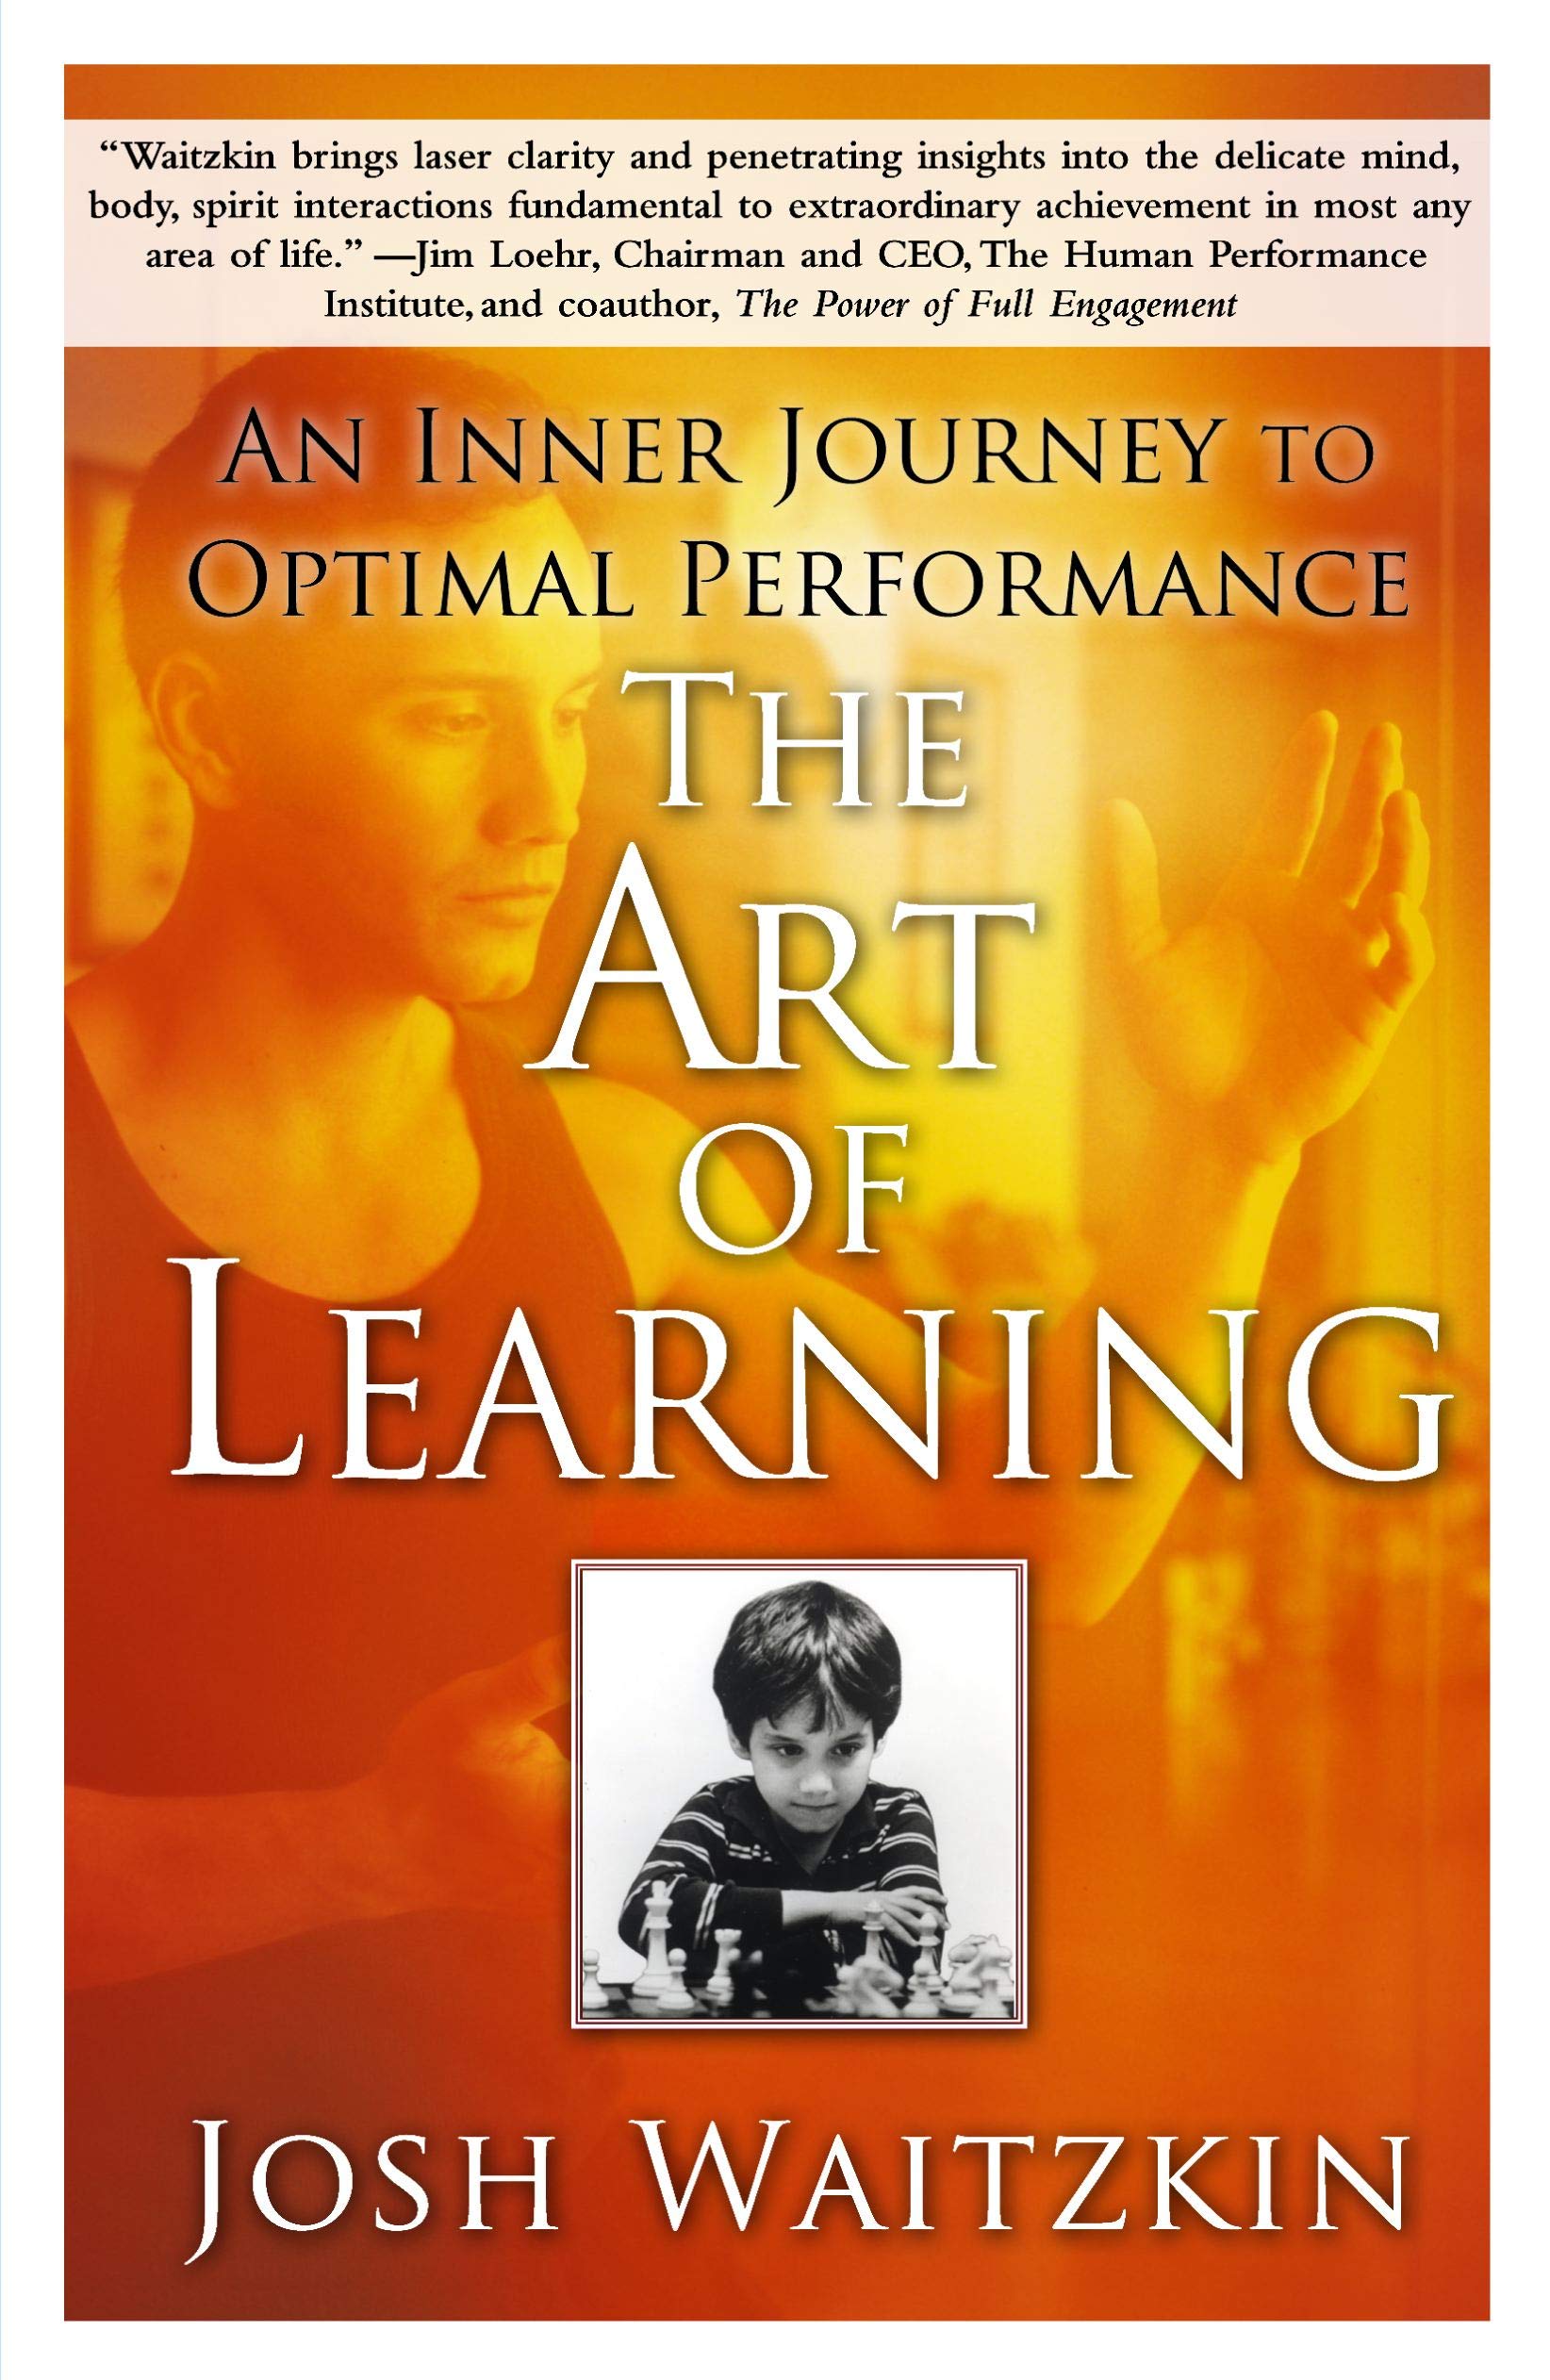 The art of learning by Josh Waitzkin